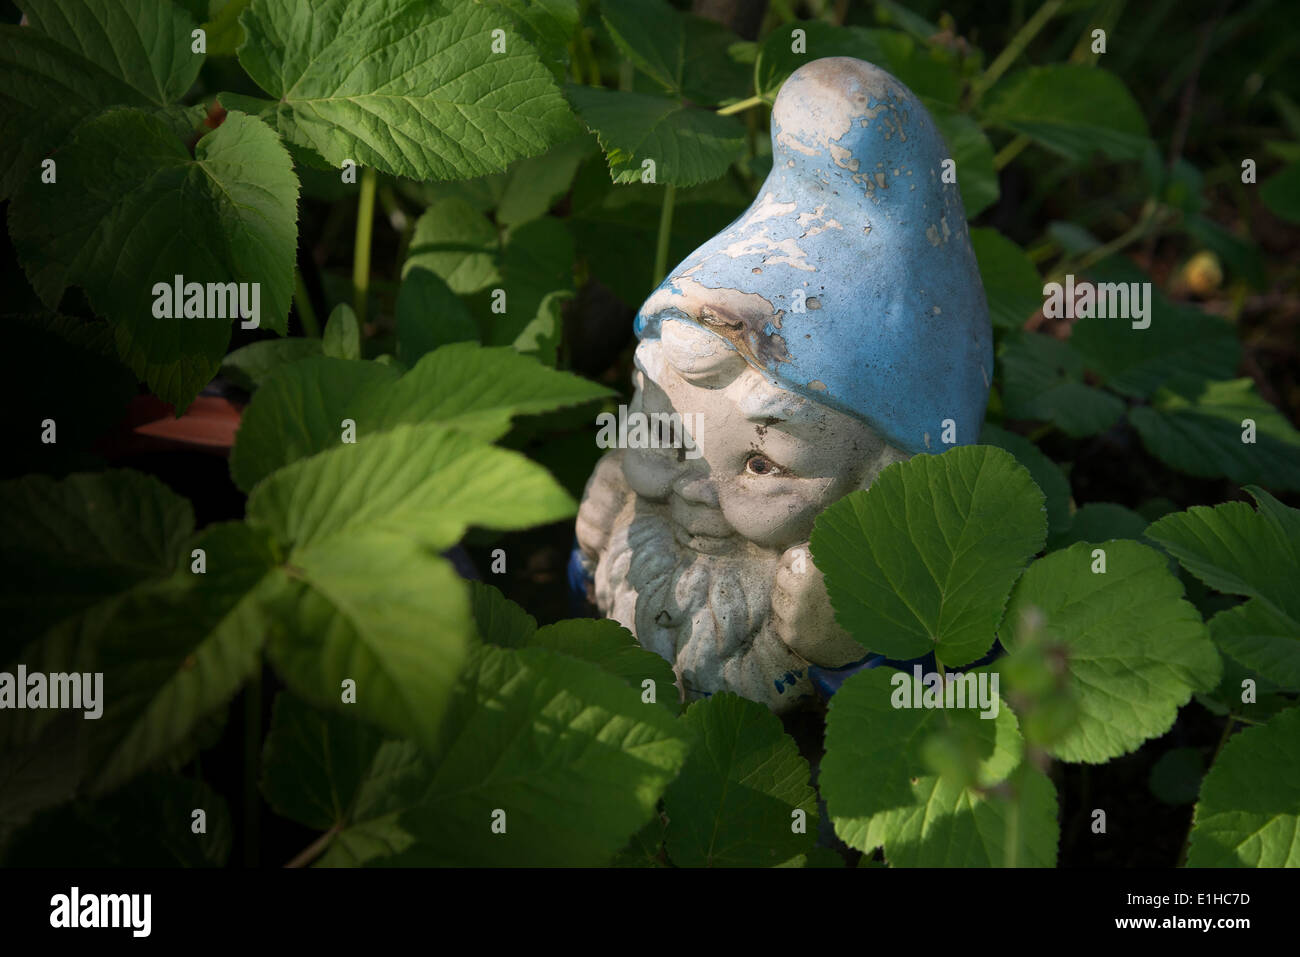 Garden gnome avec chapeau bleu Banque D'Images